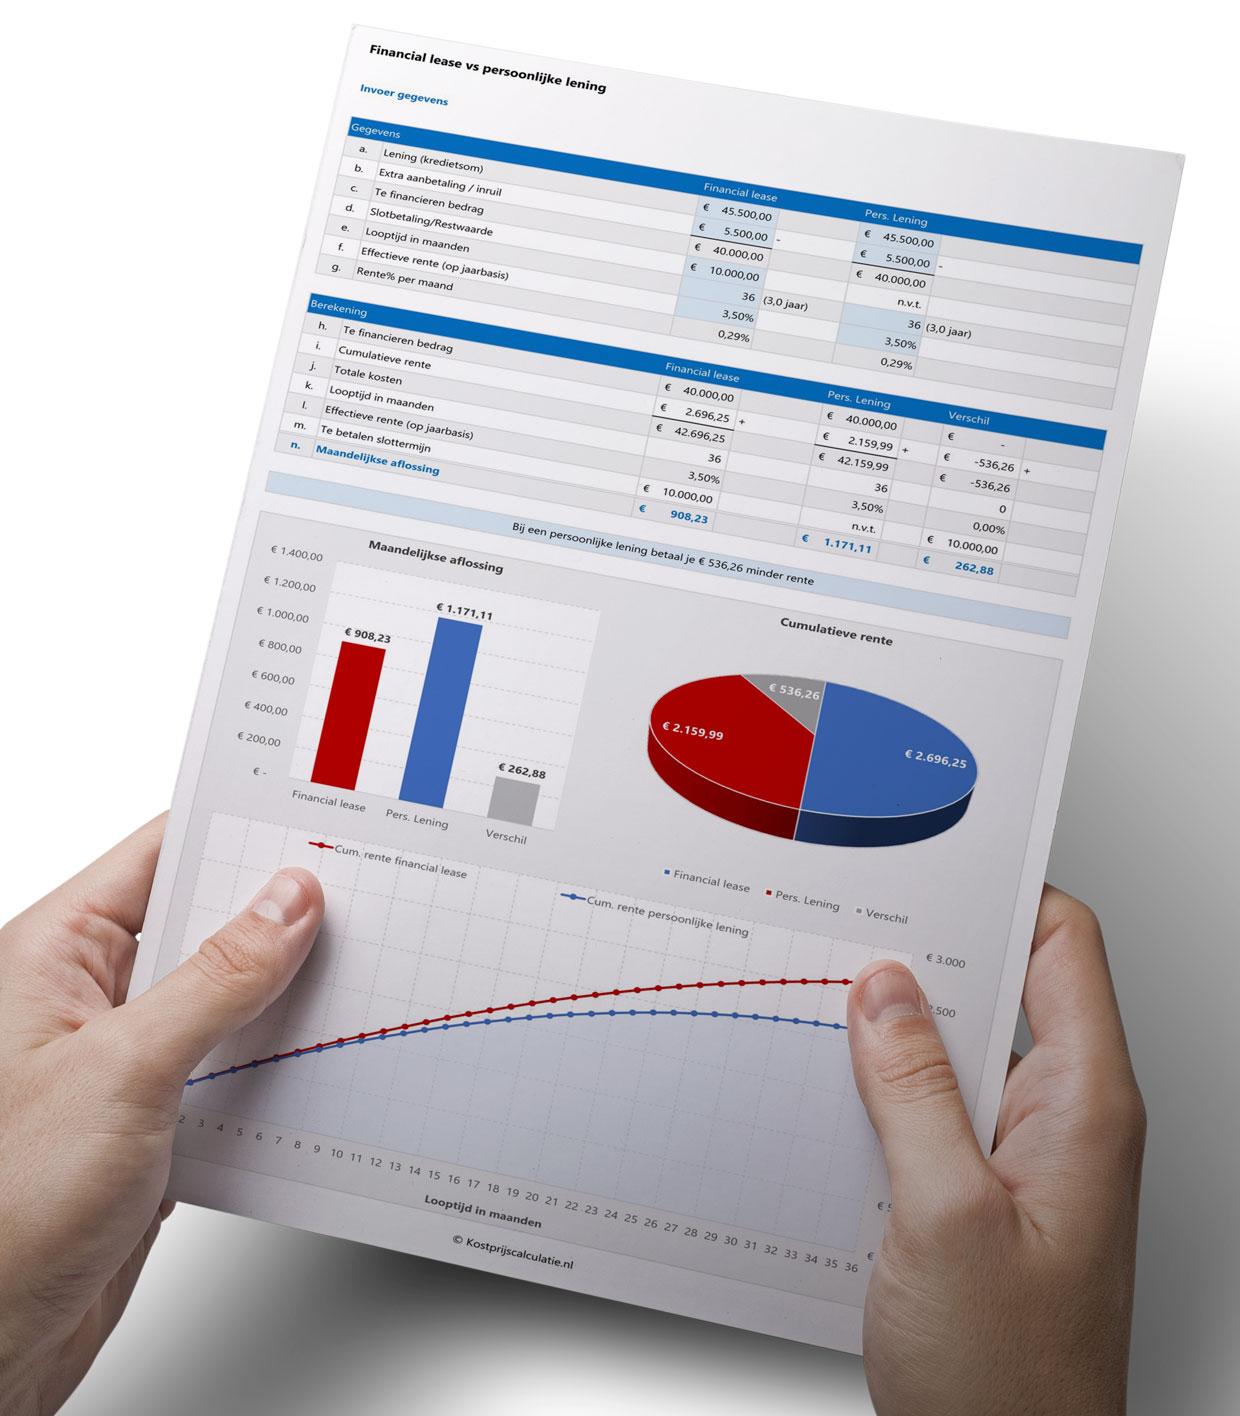 Financial-lease-of-persoonlijke-lening-vergelijken-in-Excel